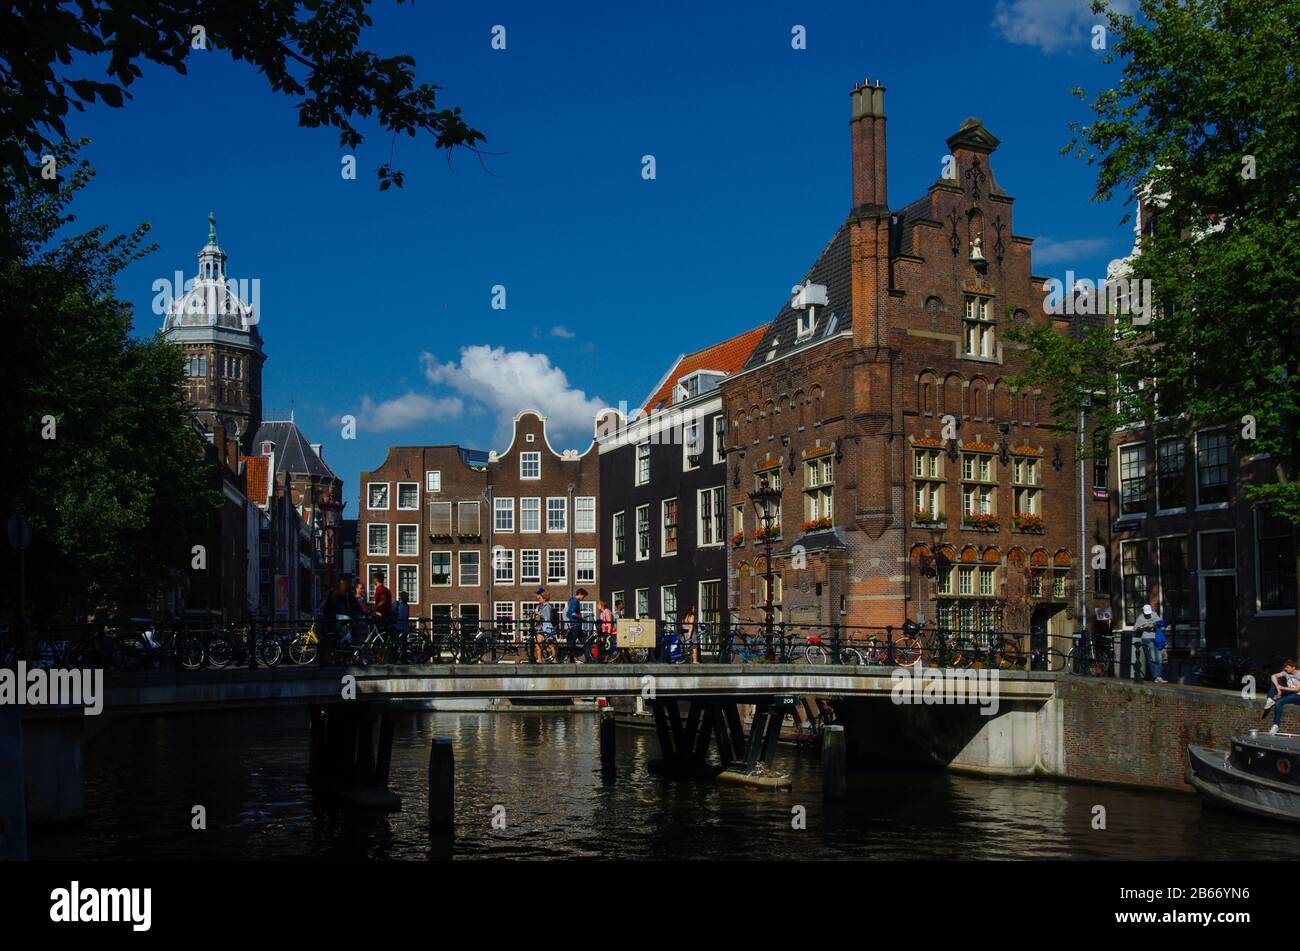 Paesaggio urbano con una chiesa con cupola e una vecchia casa con mattoni arancioni / Basilica di San Nicola - Sint Nicolaaskerk - Paesi Bassi, Europa. Foto Stock